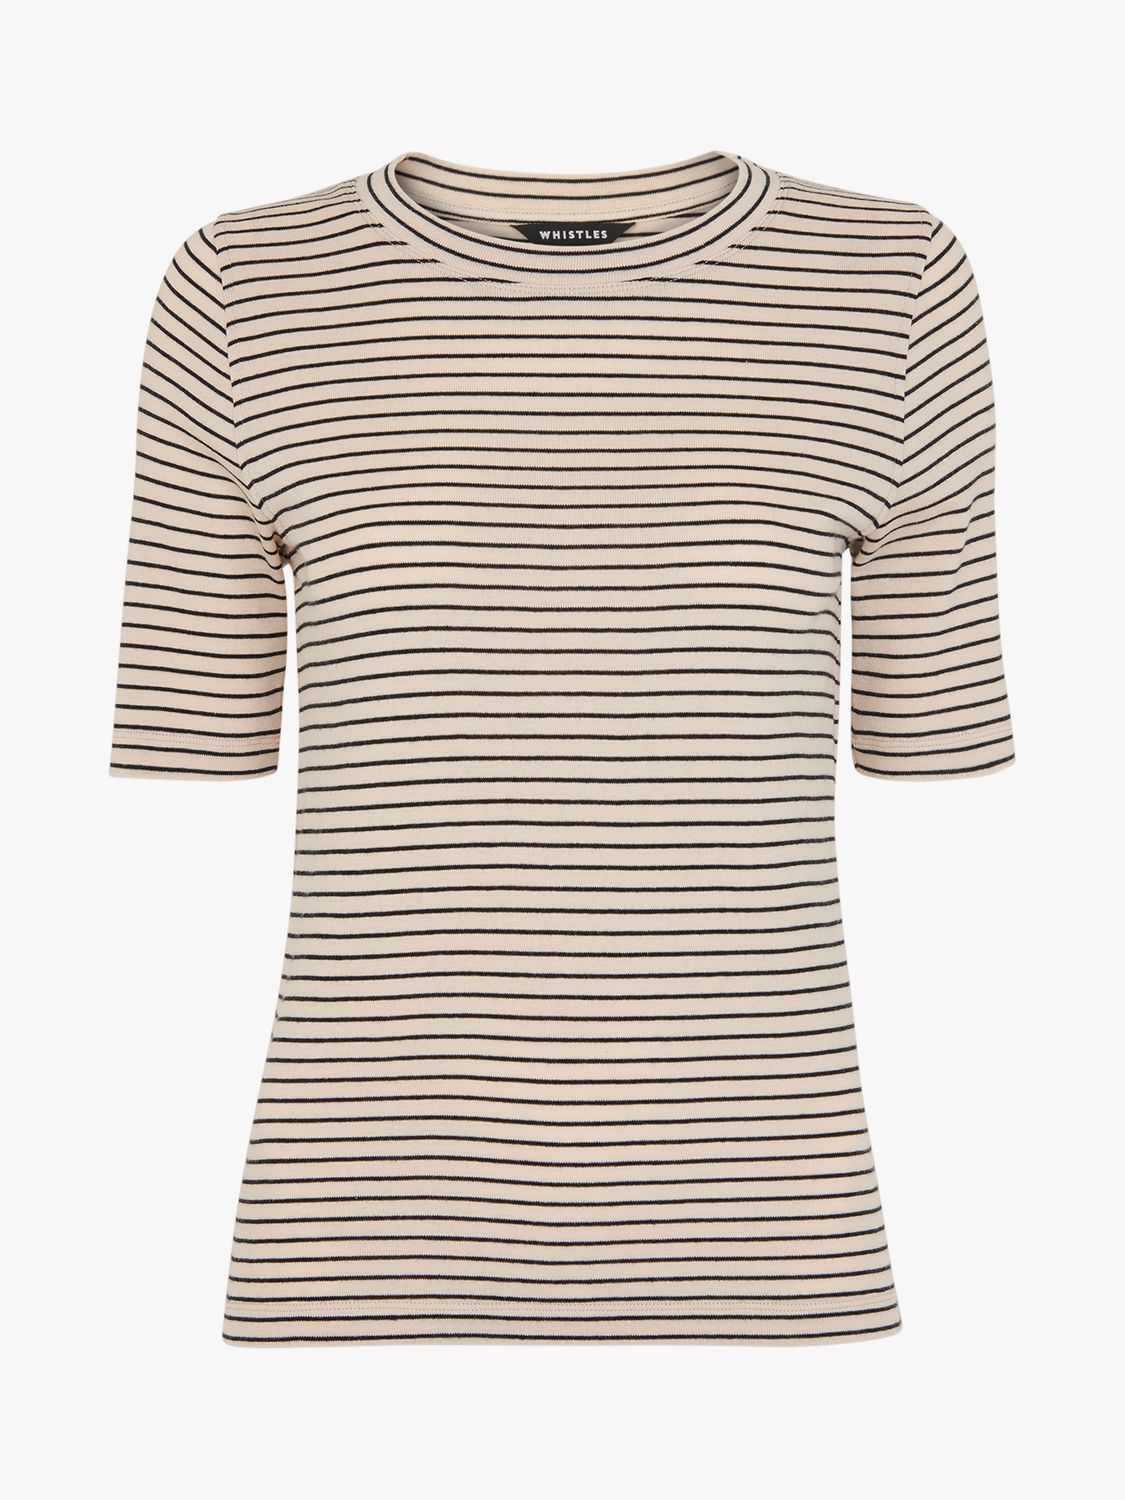 Whistles Slim Stripe T-Shirt, Navy/Multi at John Lewis & Partners